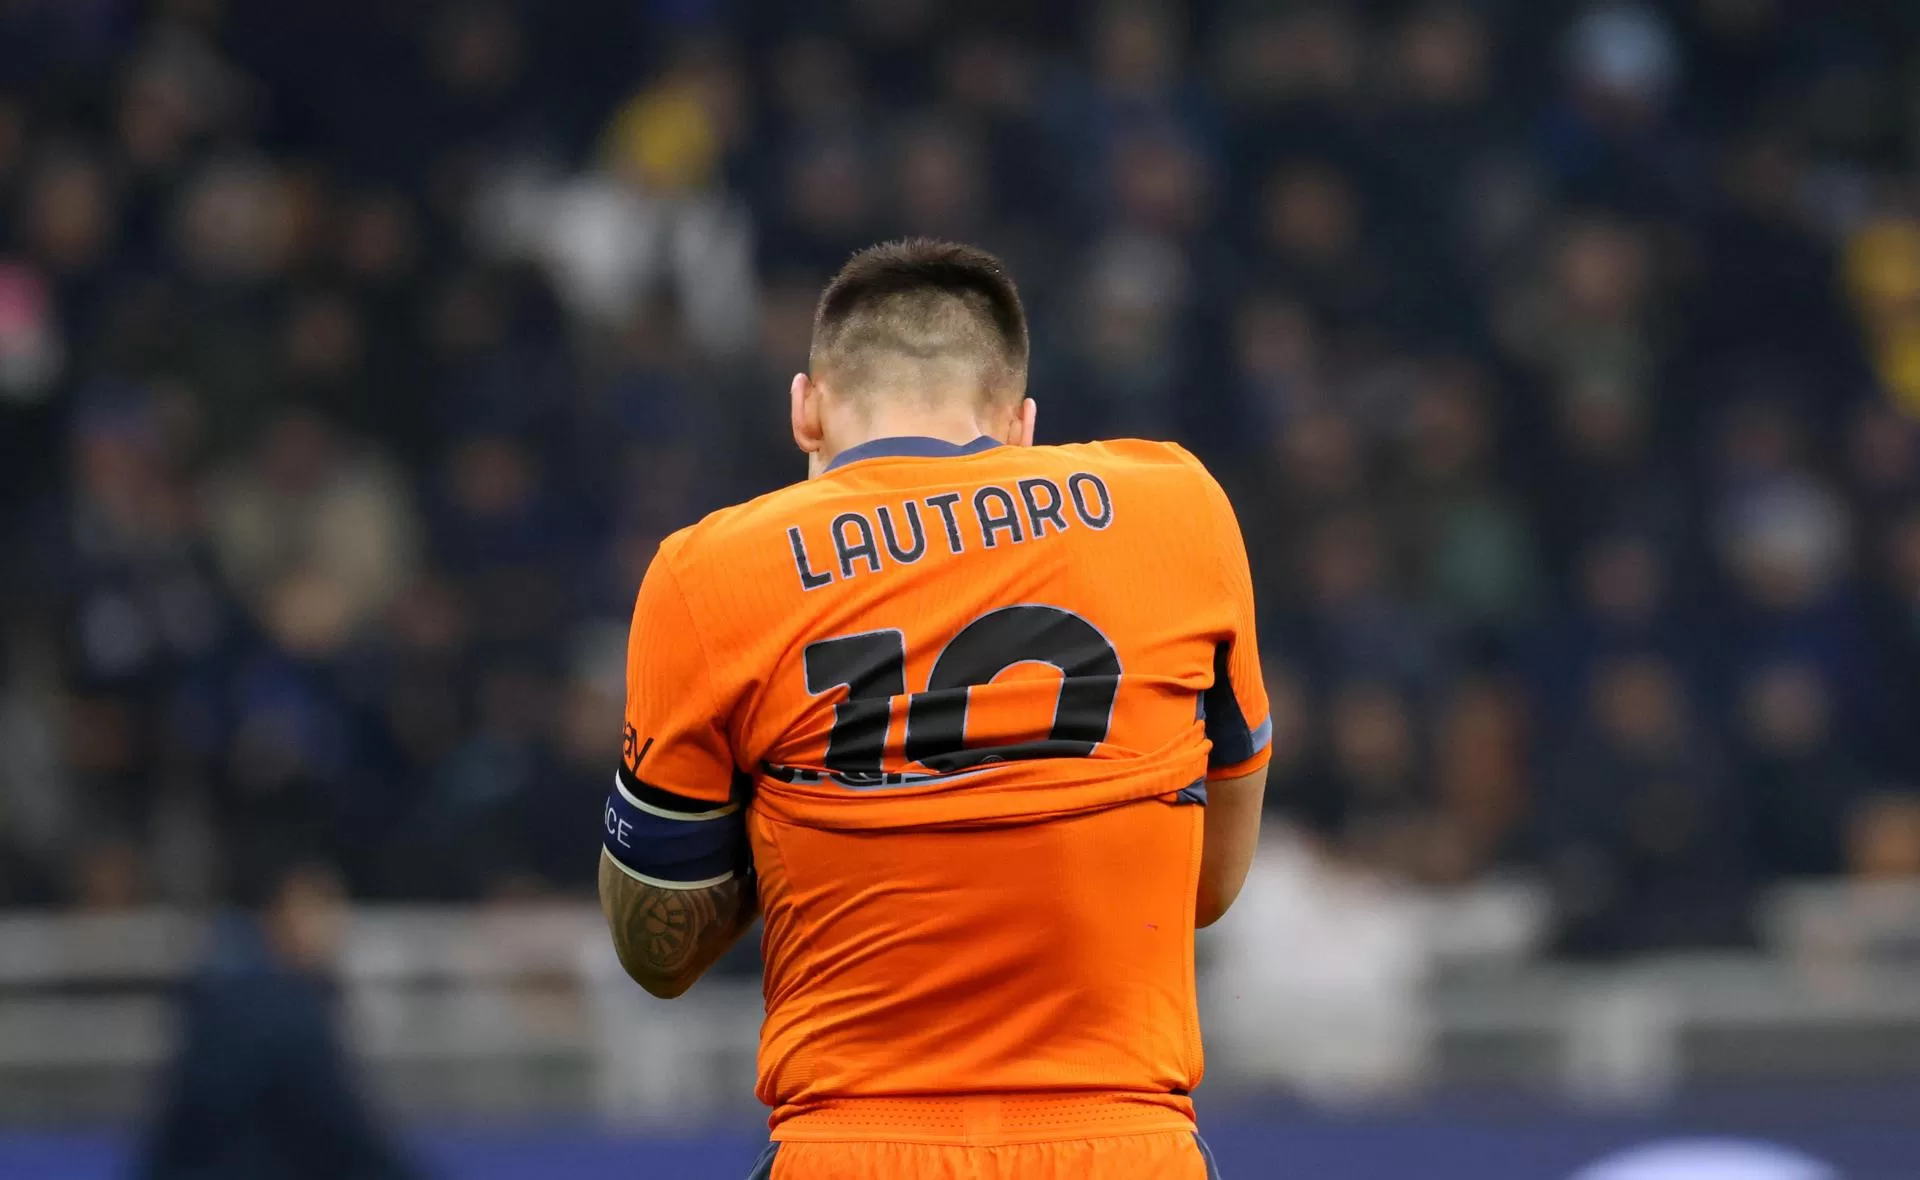 alt El argentino Lautaro Martinez (Inter) será baja al menos dos partidos por lesión muscular